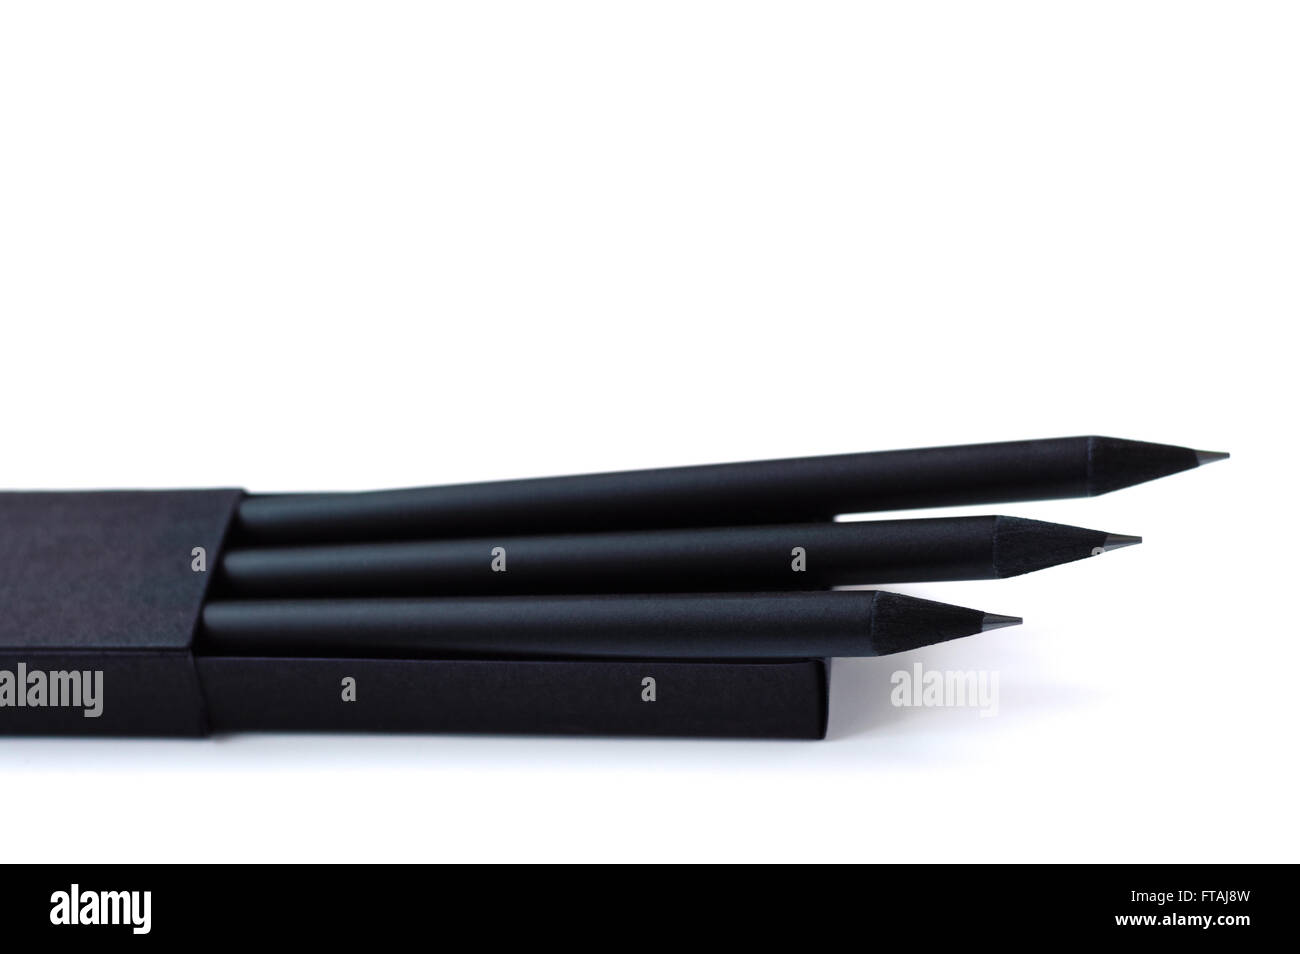 Offenen schwarzen Karton mit drei schwarze Bleistifte im Inneren. Stockfoto